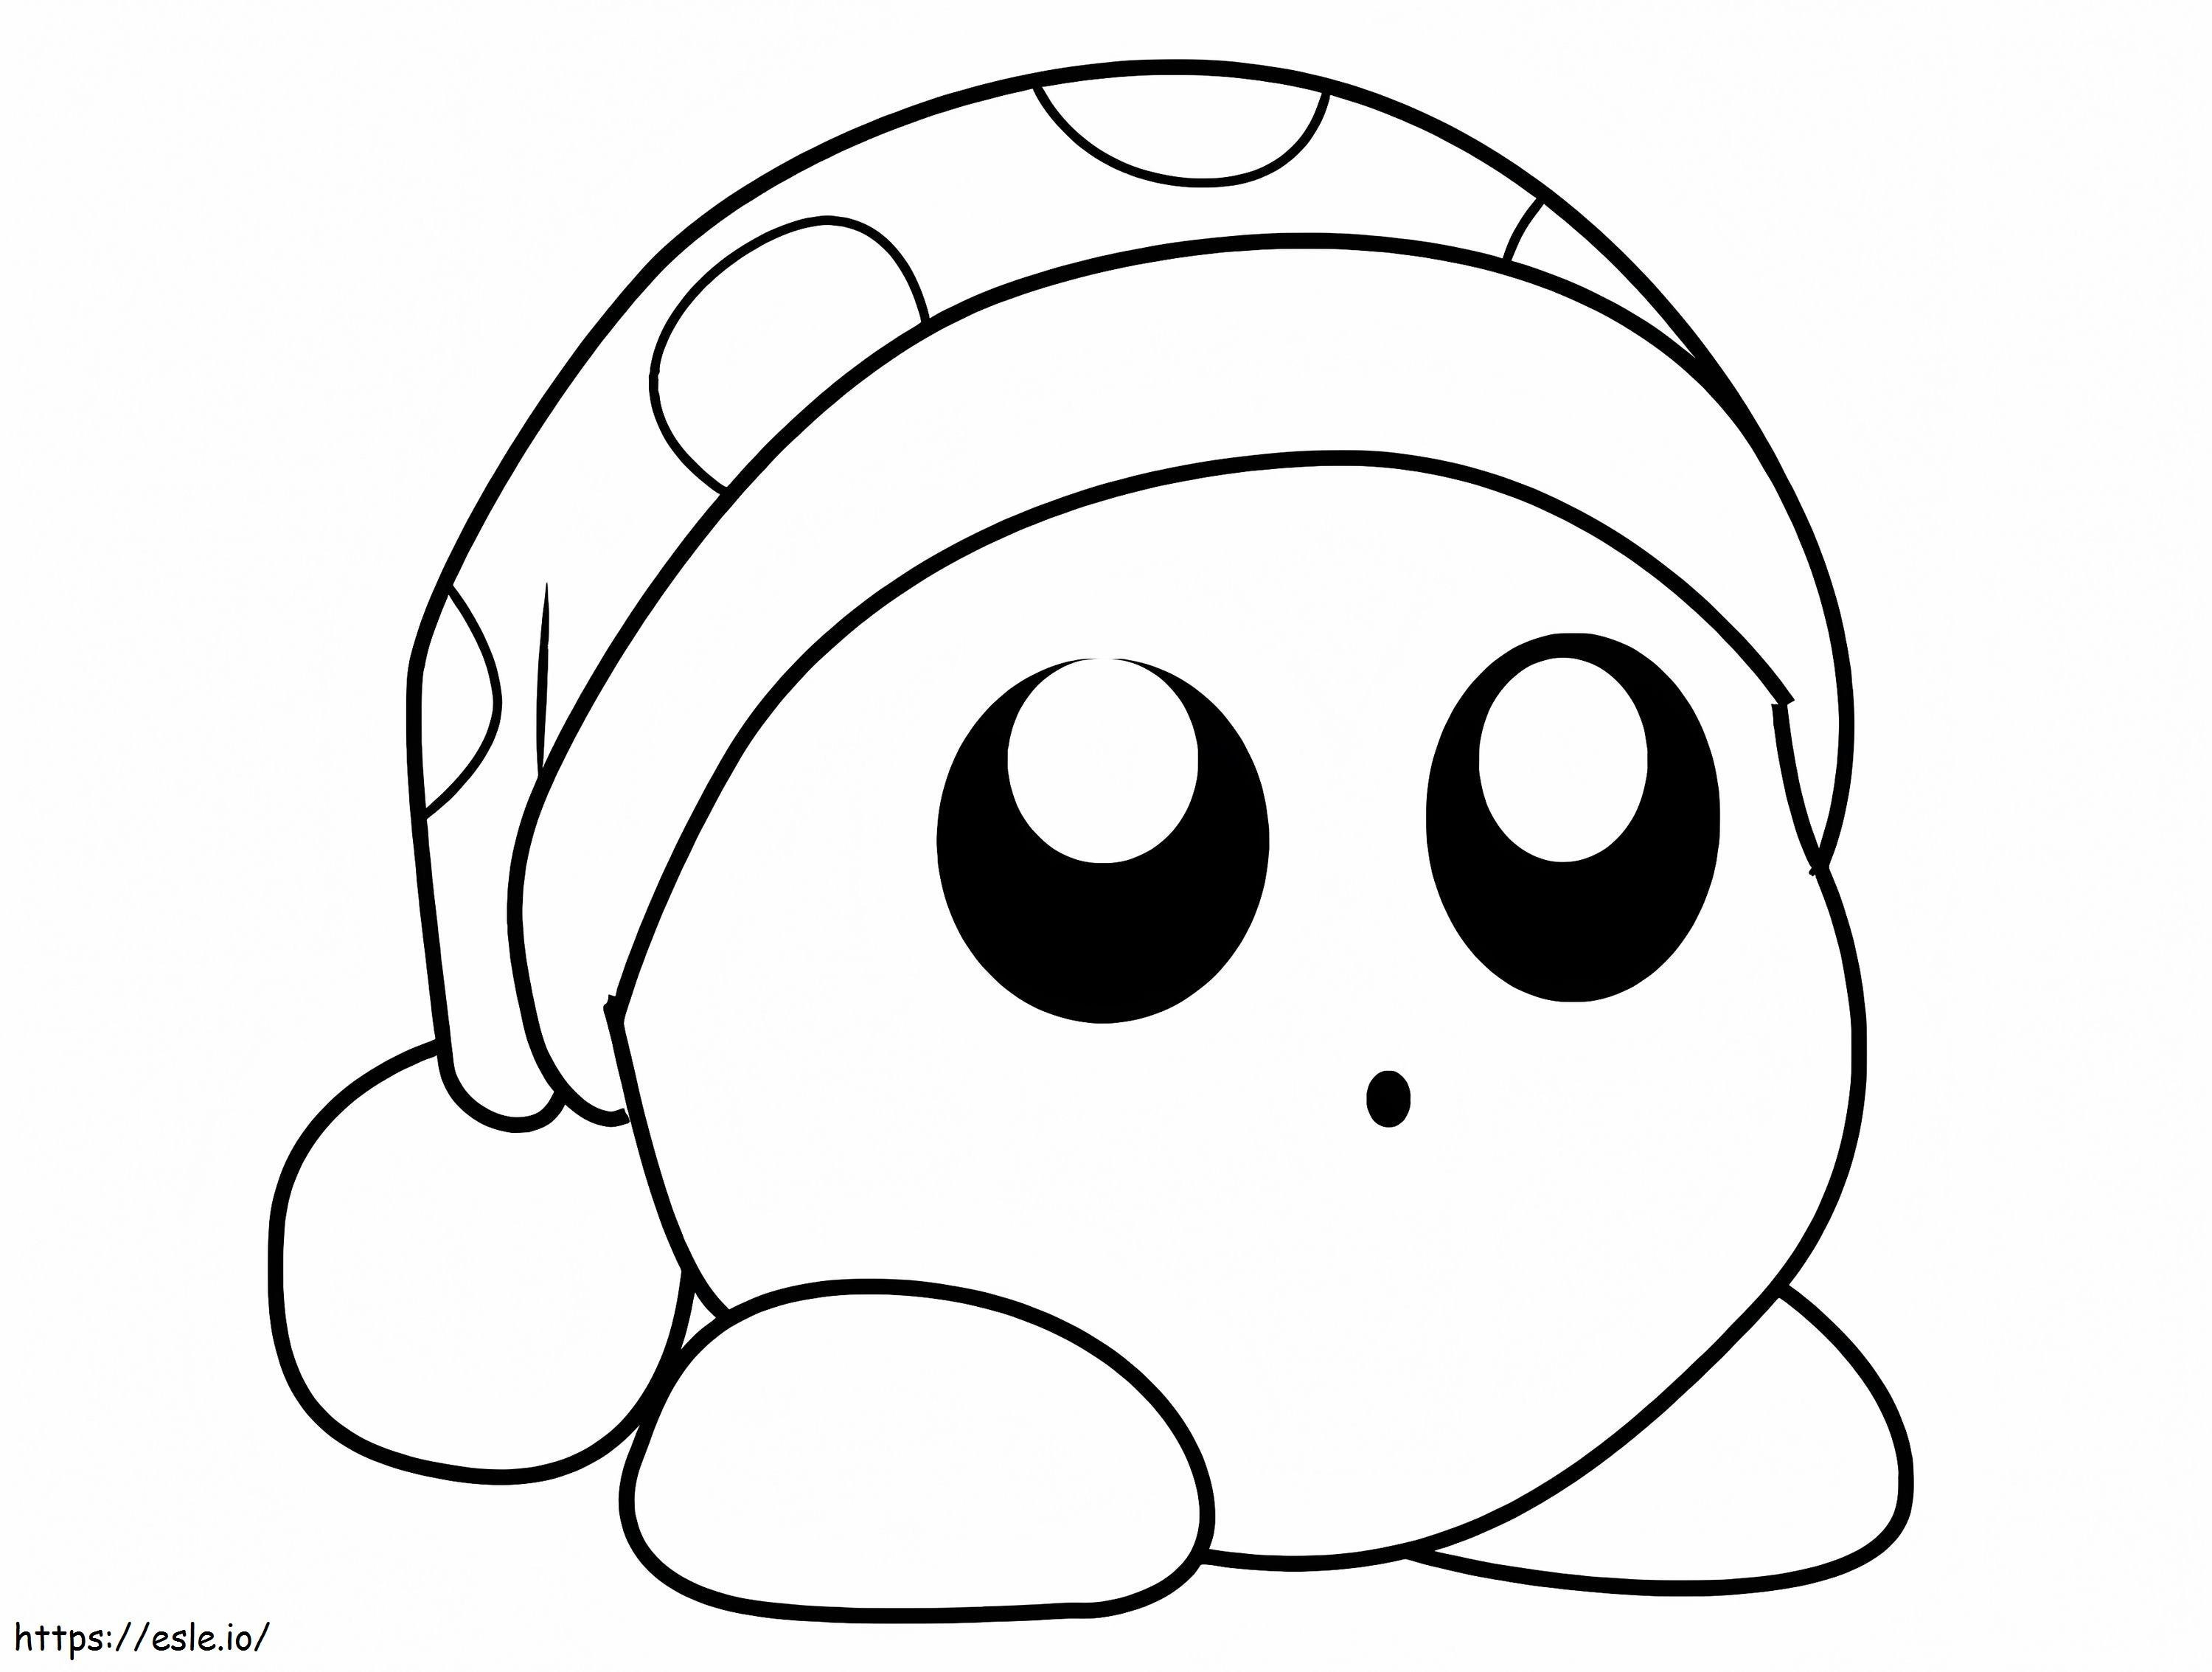 Kirby adorable imprimible para colorear